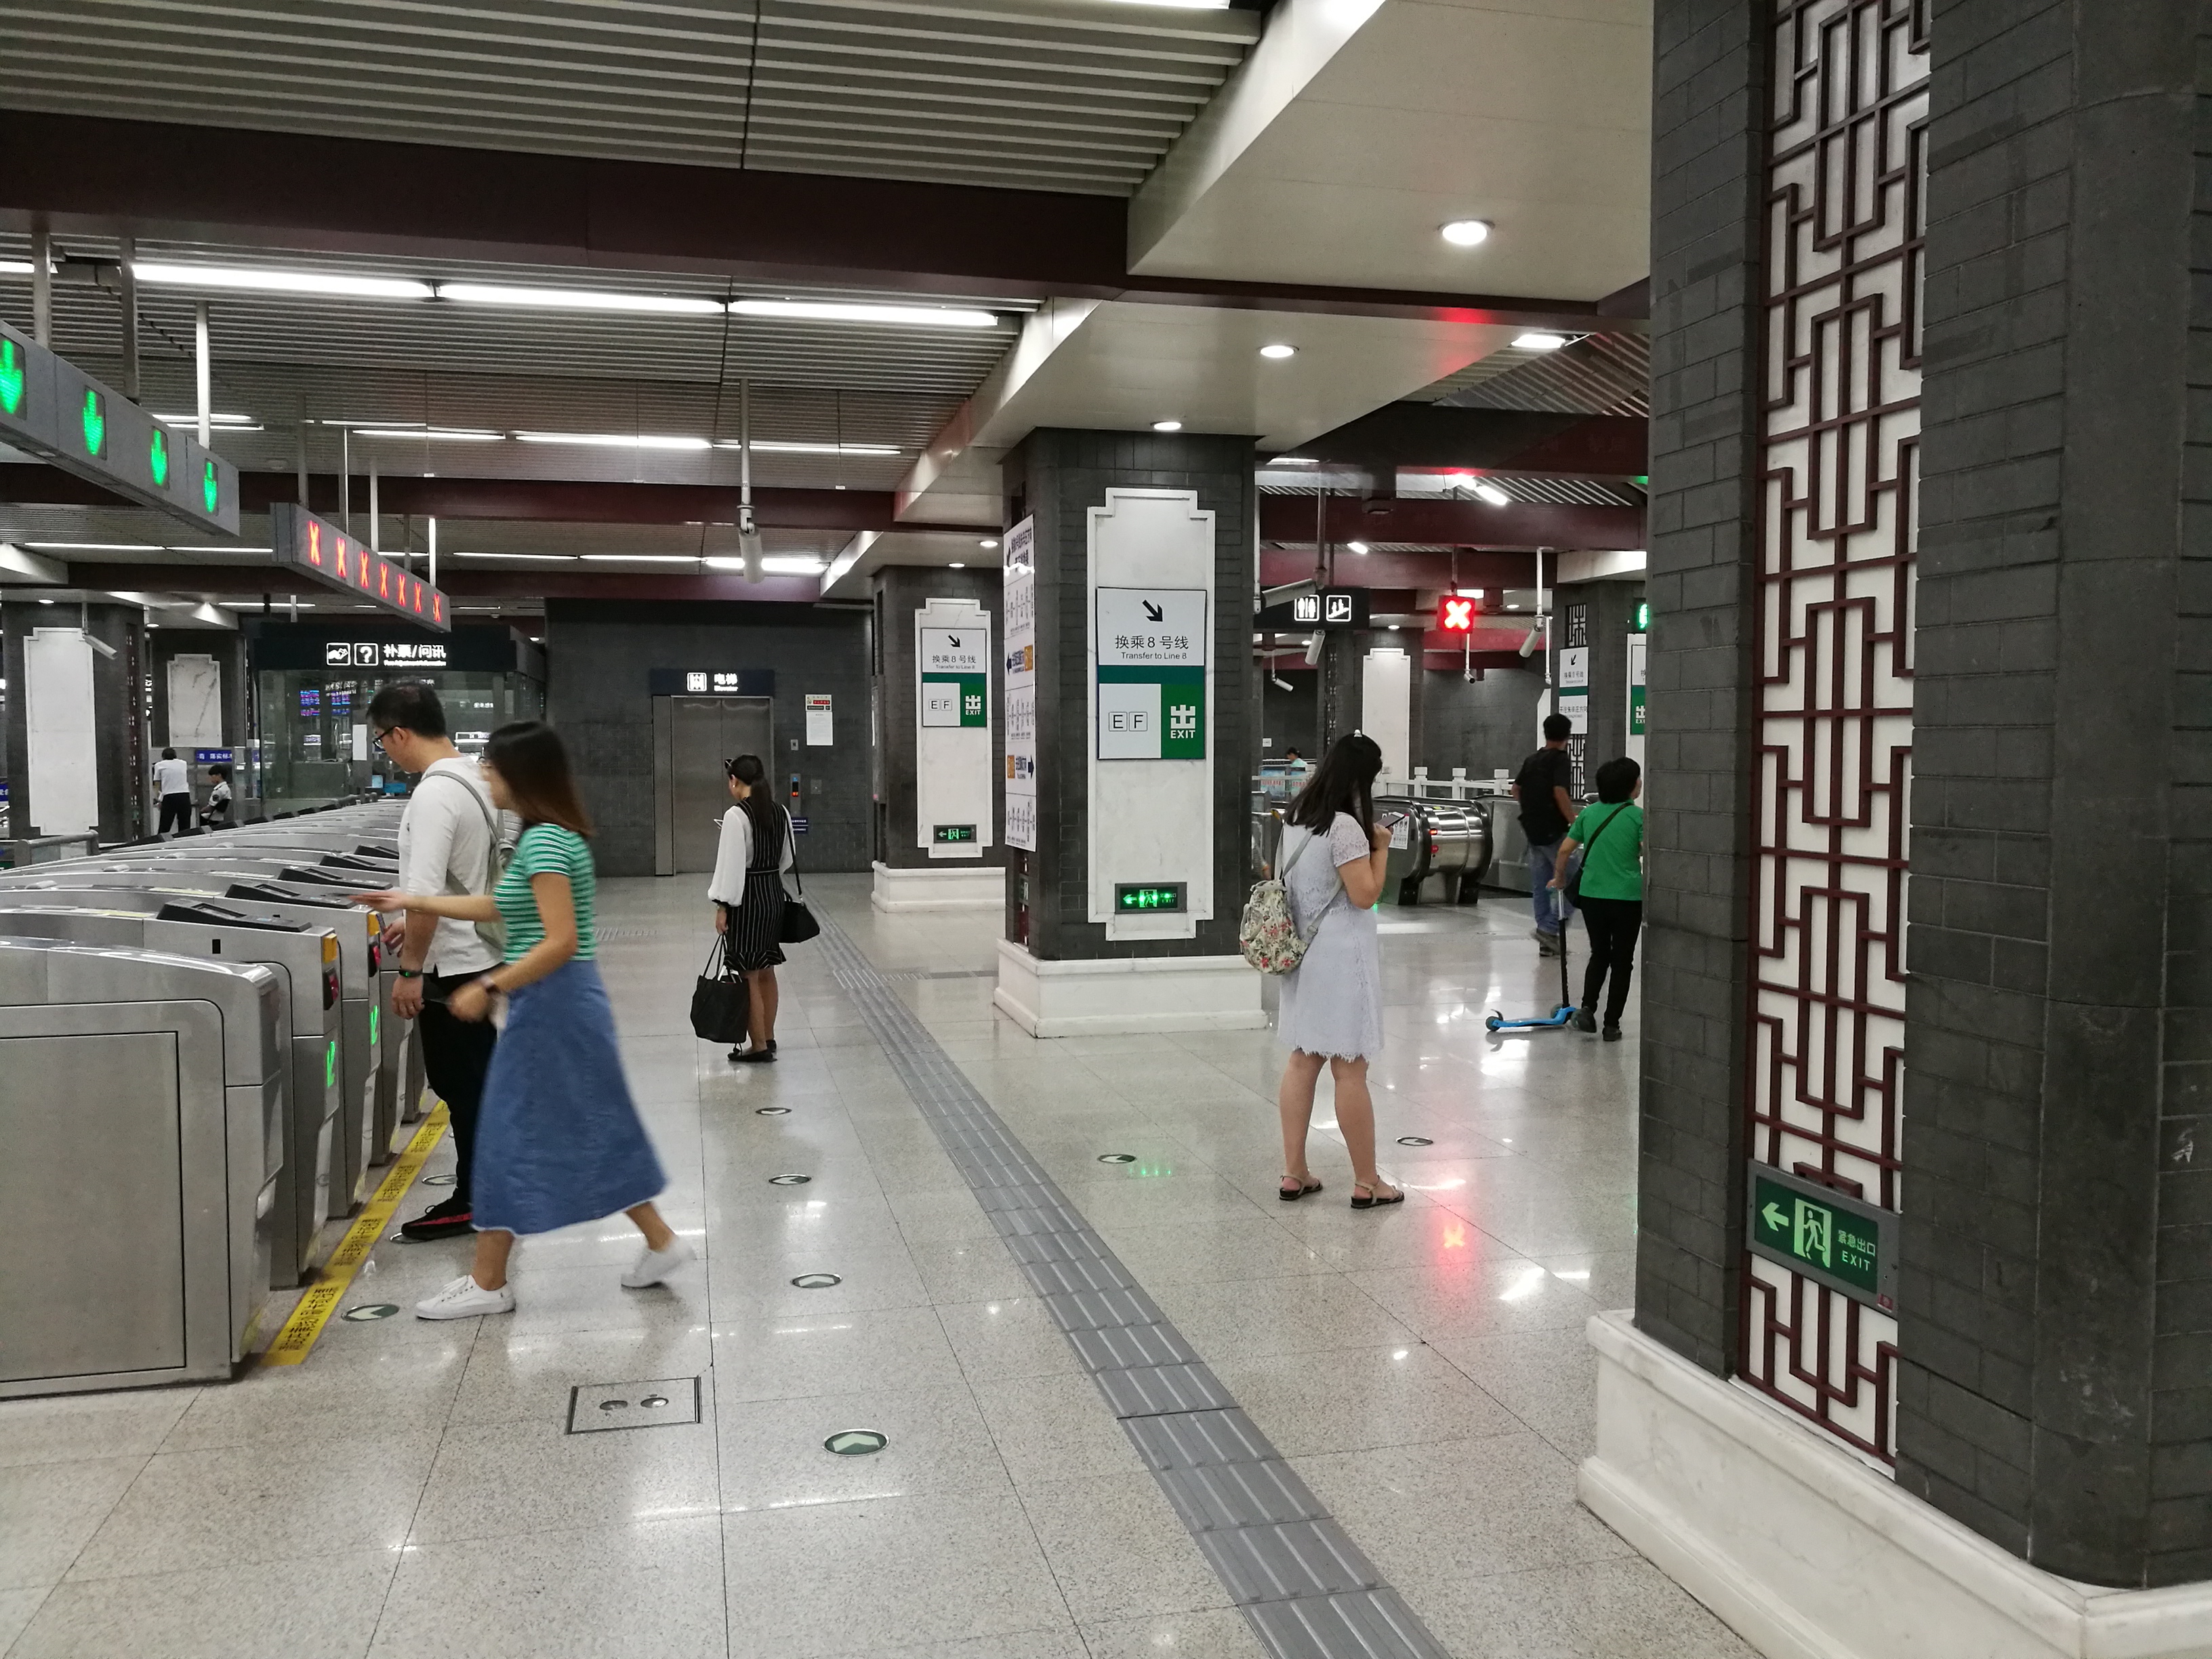 中国设计很巧妙地铁换乘站:北京地铁8号线和6号线的南锣鼓巷站